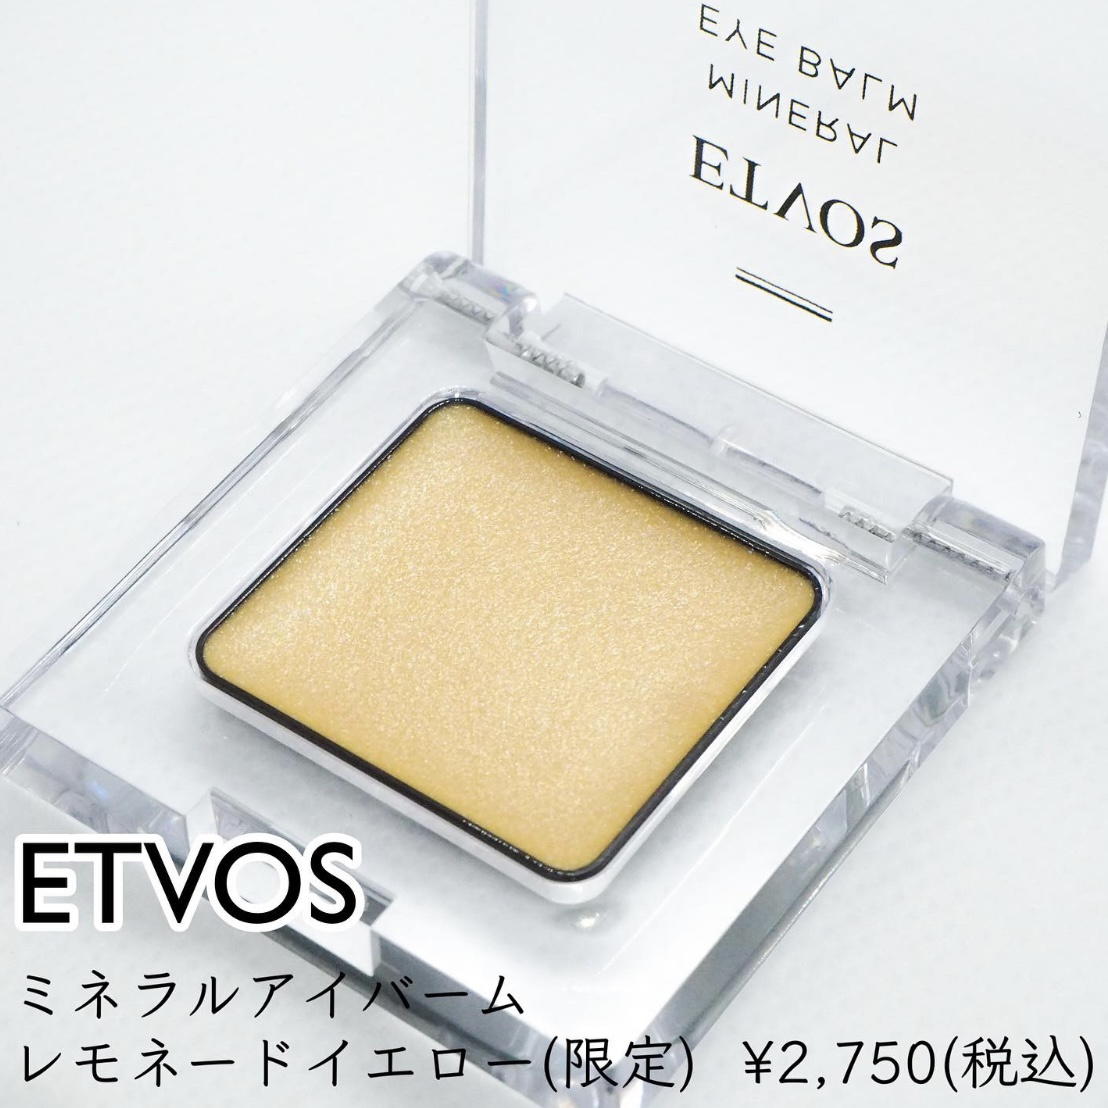 ETVOS(エトヴォス) ミネラルアイバームの良い点・メリットに関する只野ひとみさんの口コミ画像1